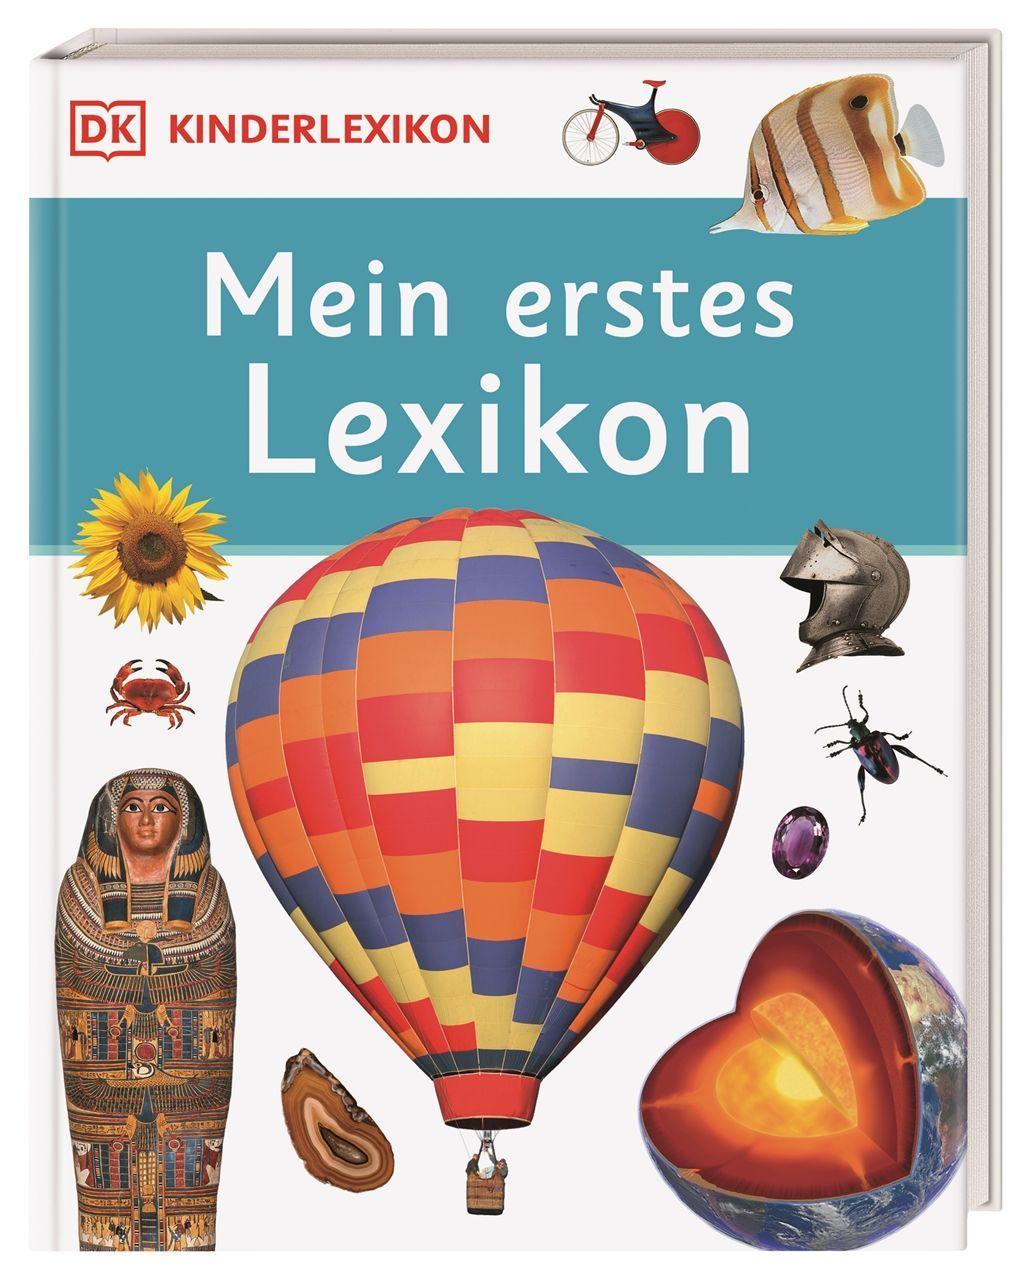 Kniha DK Kinderlexikon. Mein erstes Lexikon 